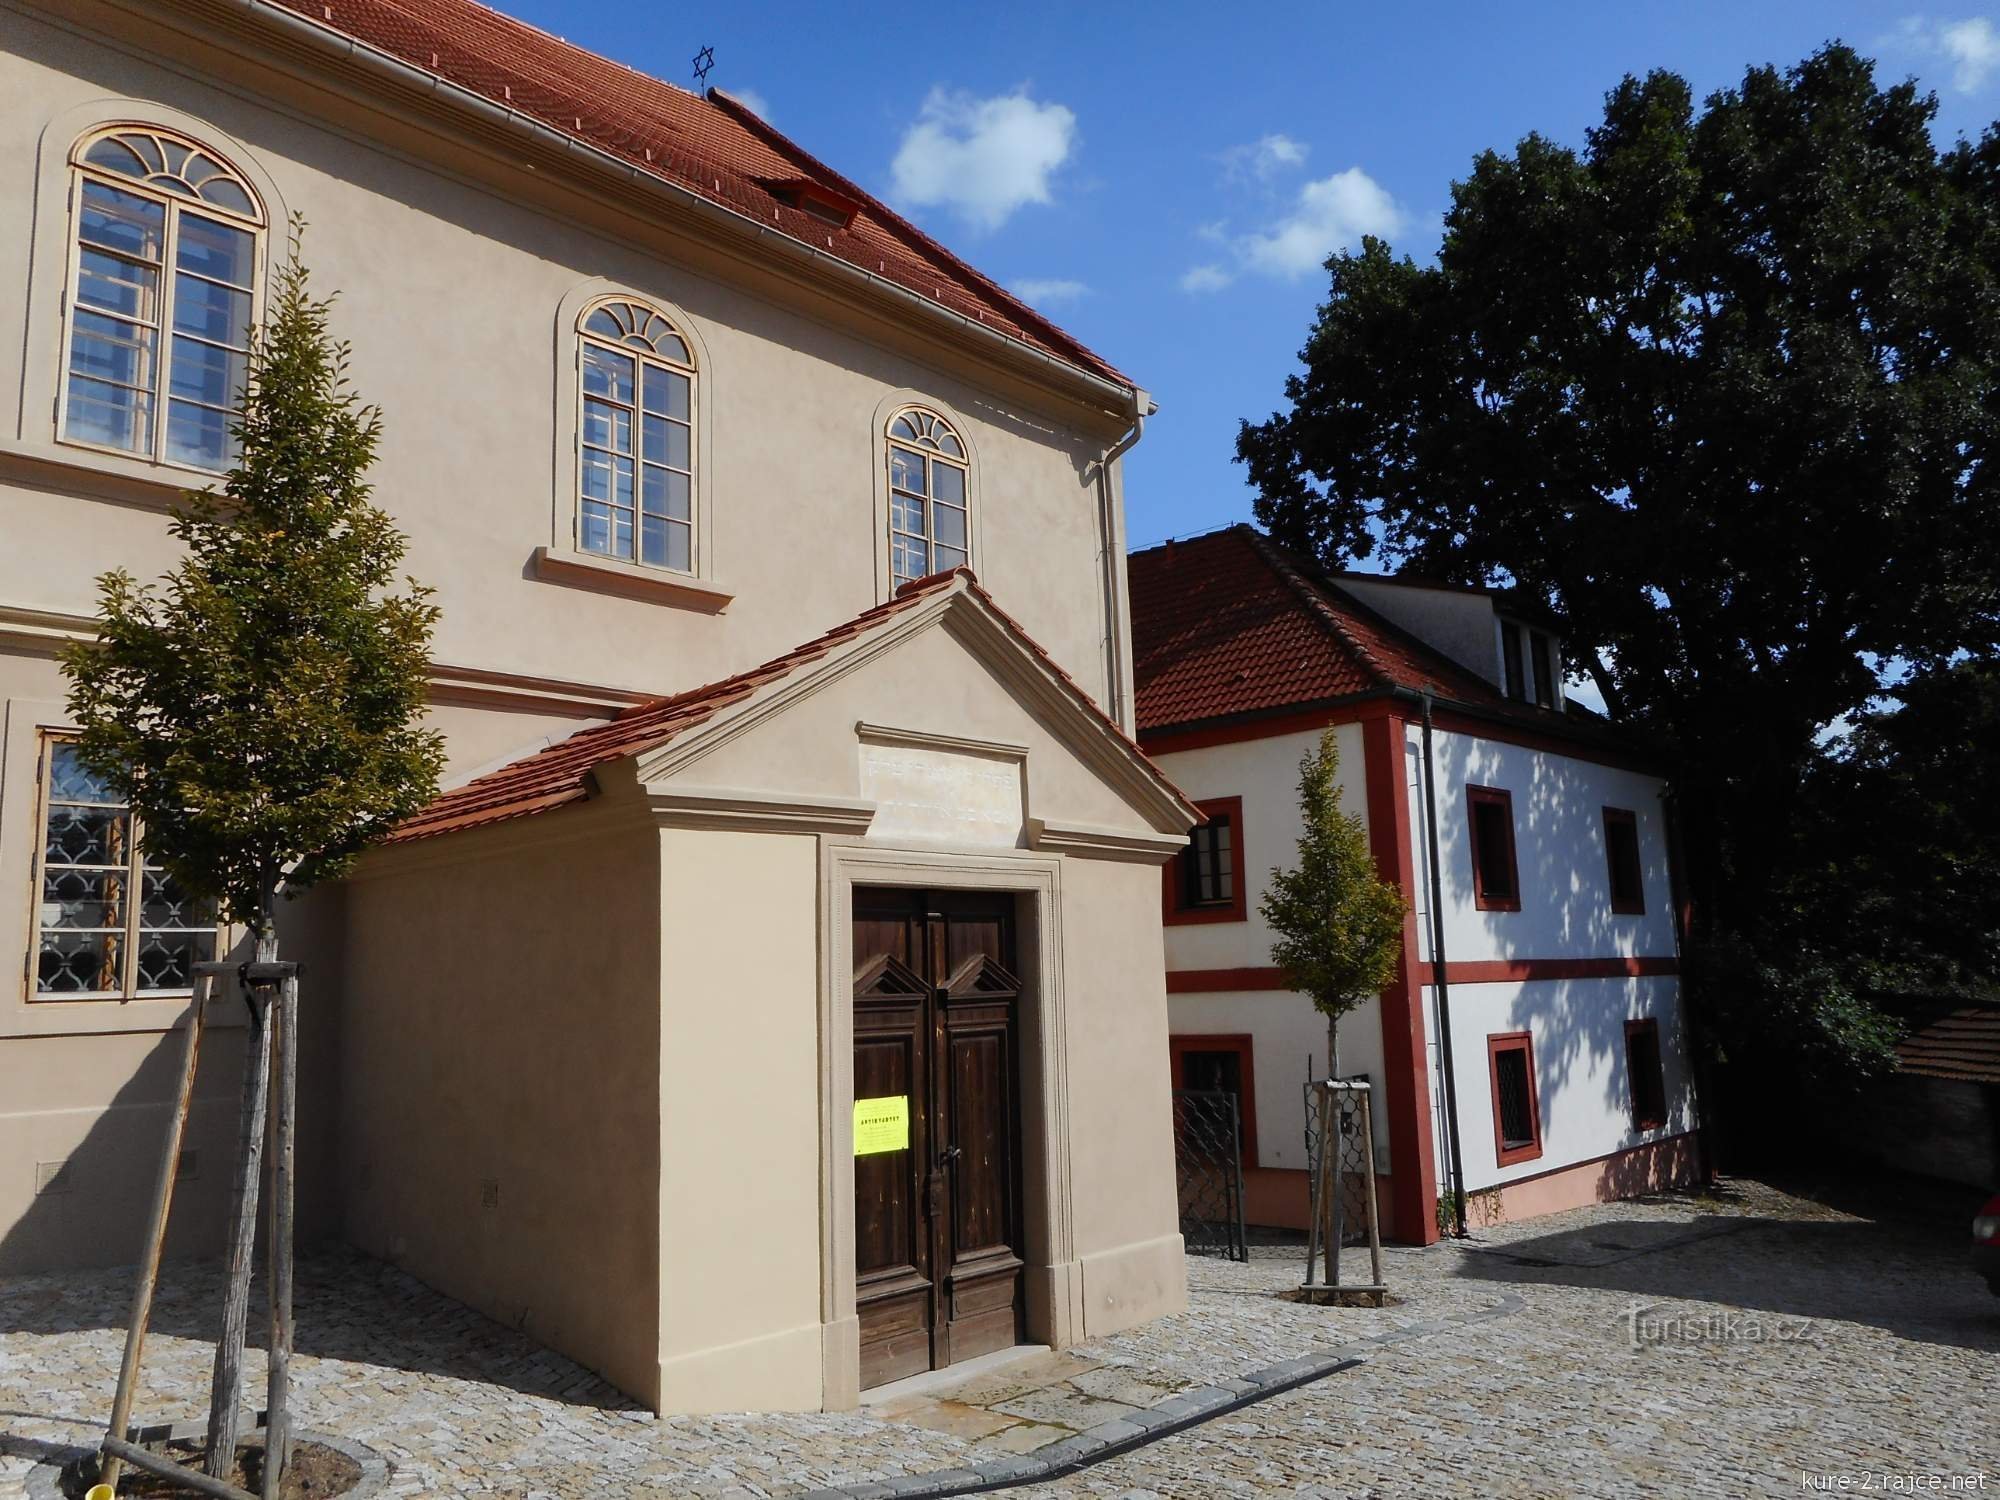 Danes sinagoga služi kot judovski muzej